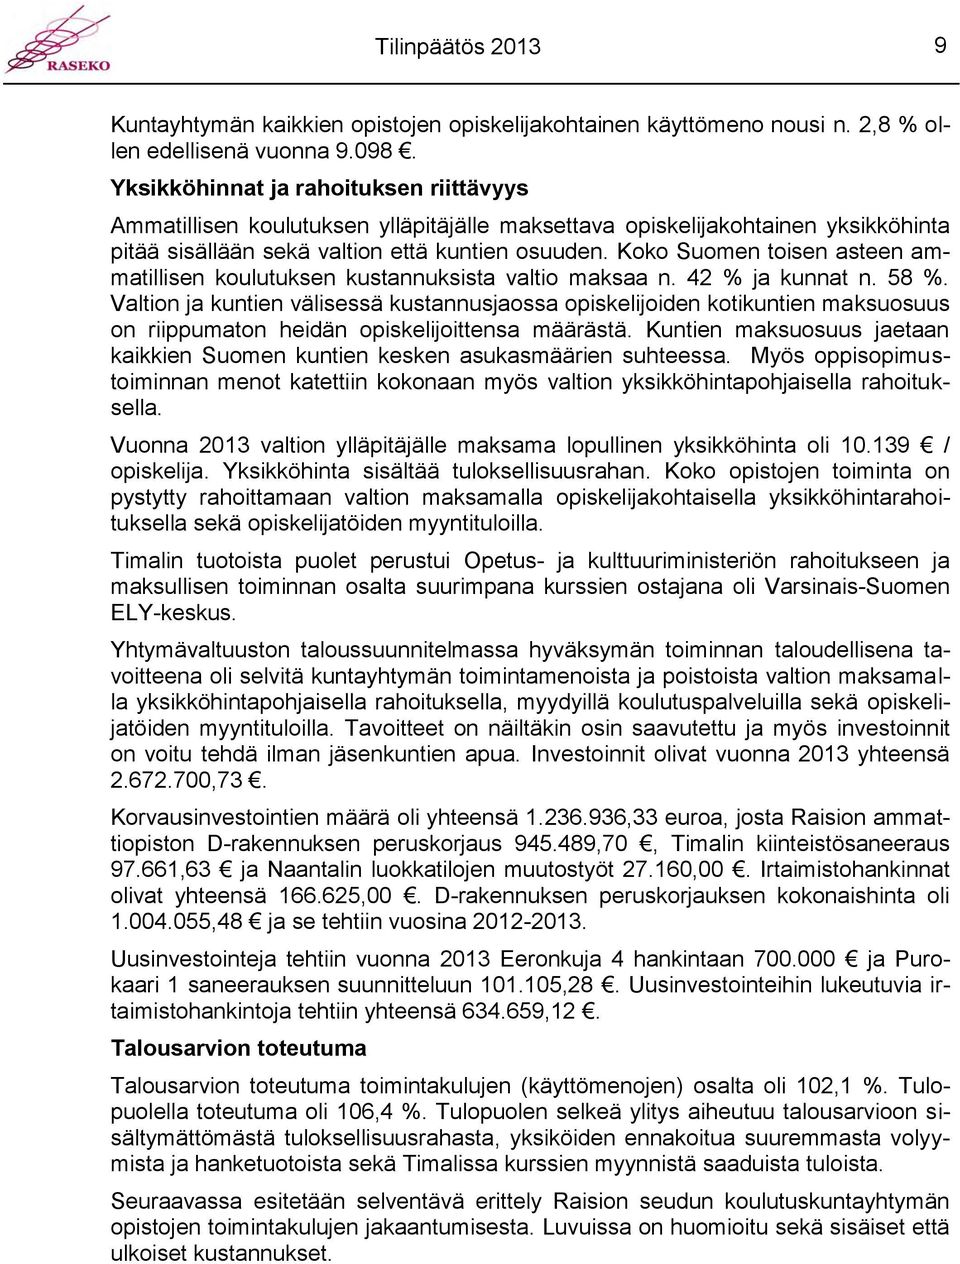 Koko Suomen toisen asteen ammatillisen koulutuksen kustannuksista valtio maksaa n. 42 % ja kunnat n. 58 %.